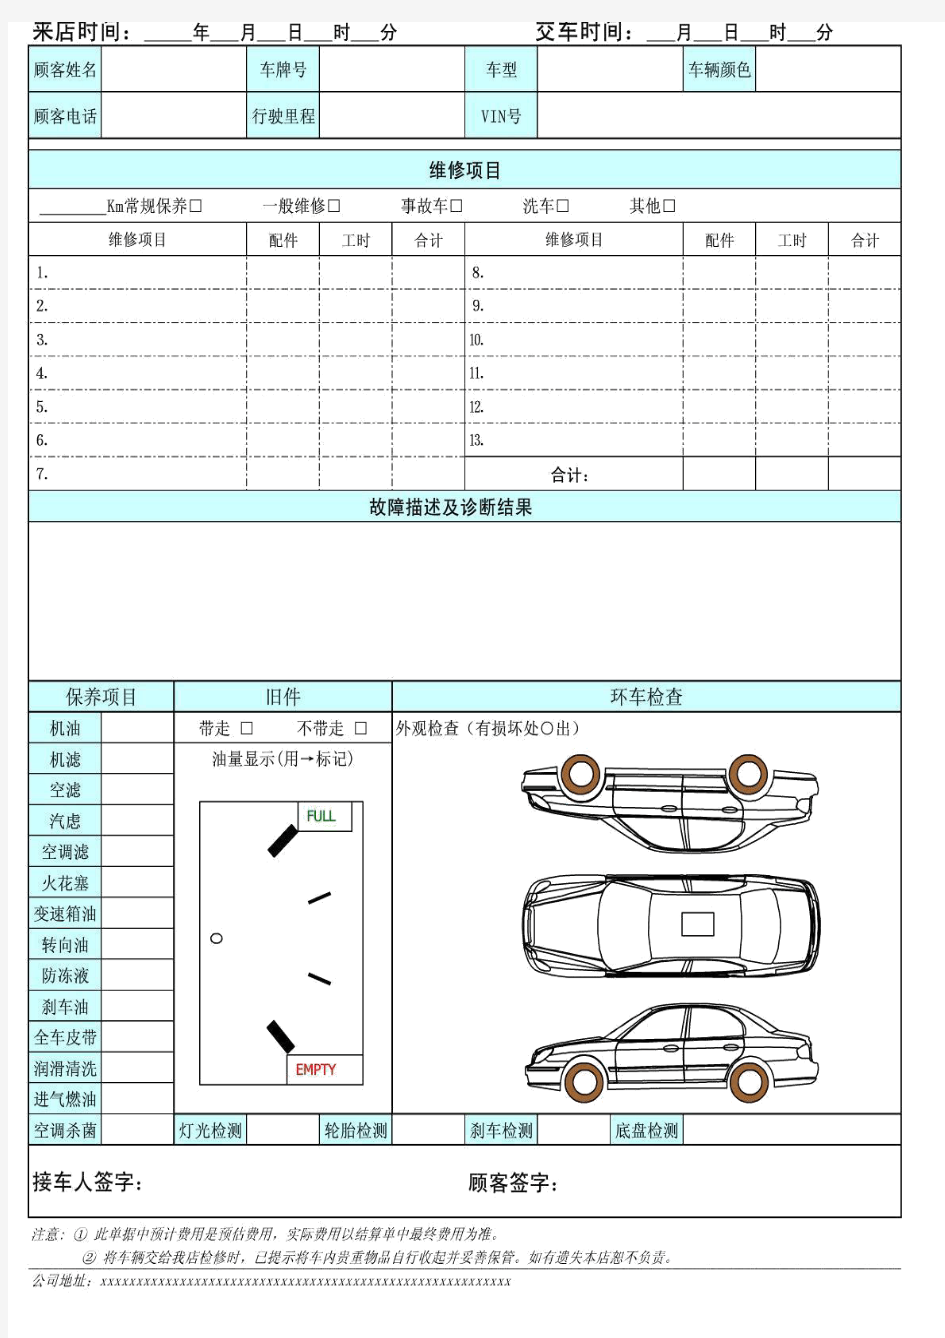 汽车维修接车单.pdf